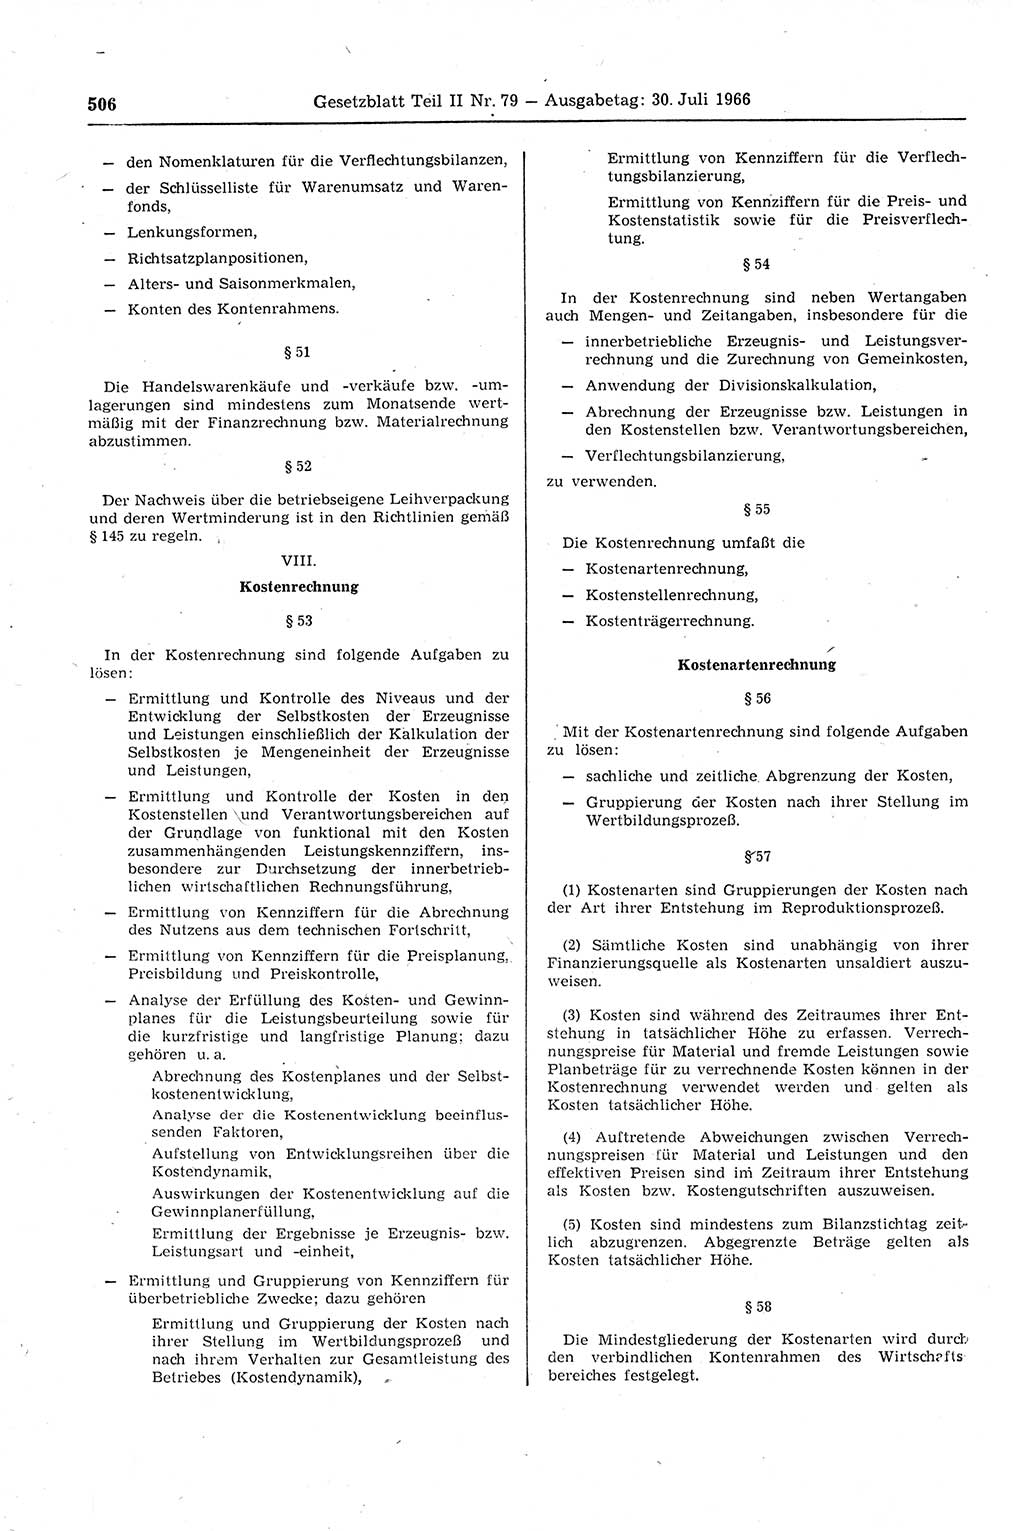 Gesetzblatt (GBl.) der Deutschen Demokratischen Republik (DDR) Teil ⅠⅠ 1966, Seite 506 (GBl. DDR ⅠⅠ 1966, S. 506)